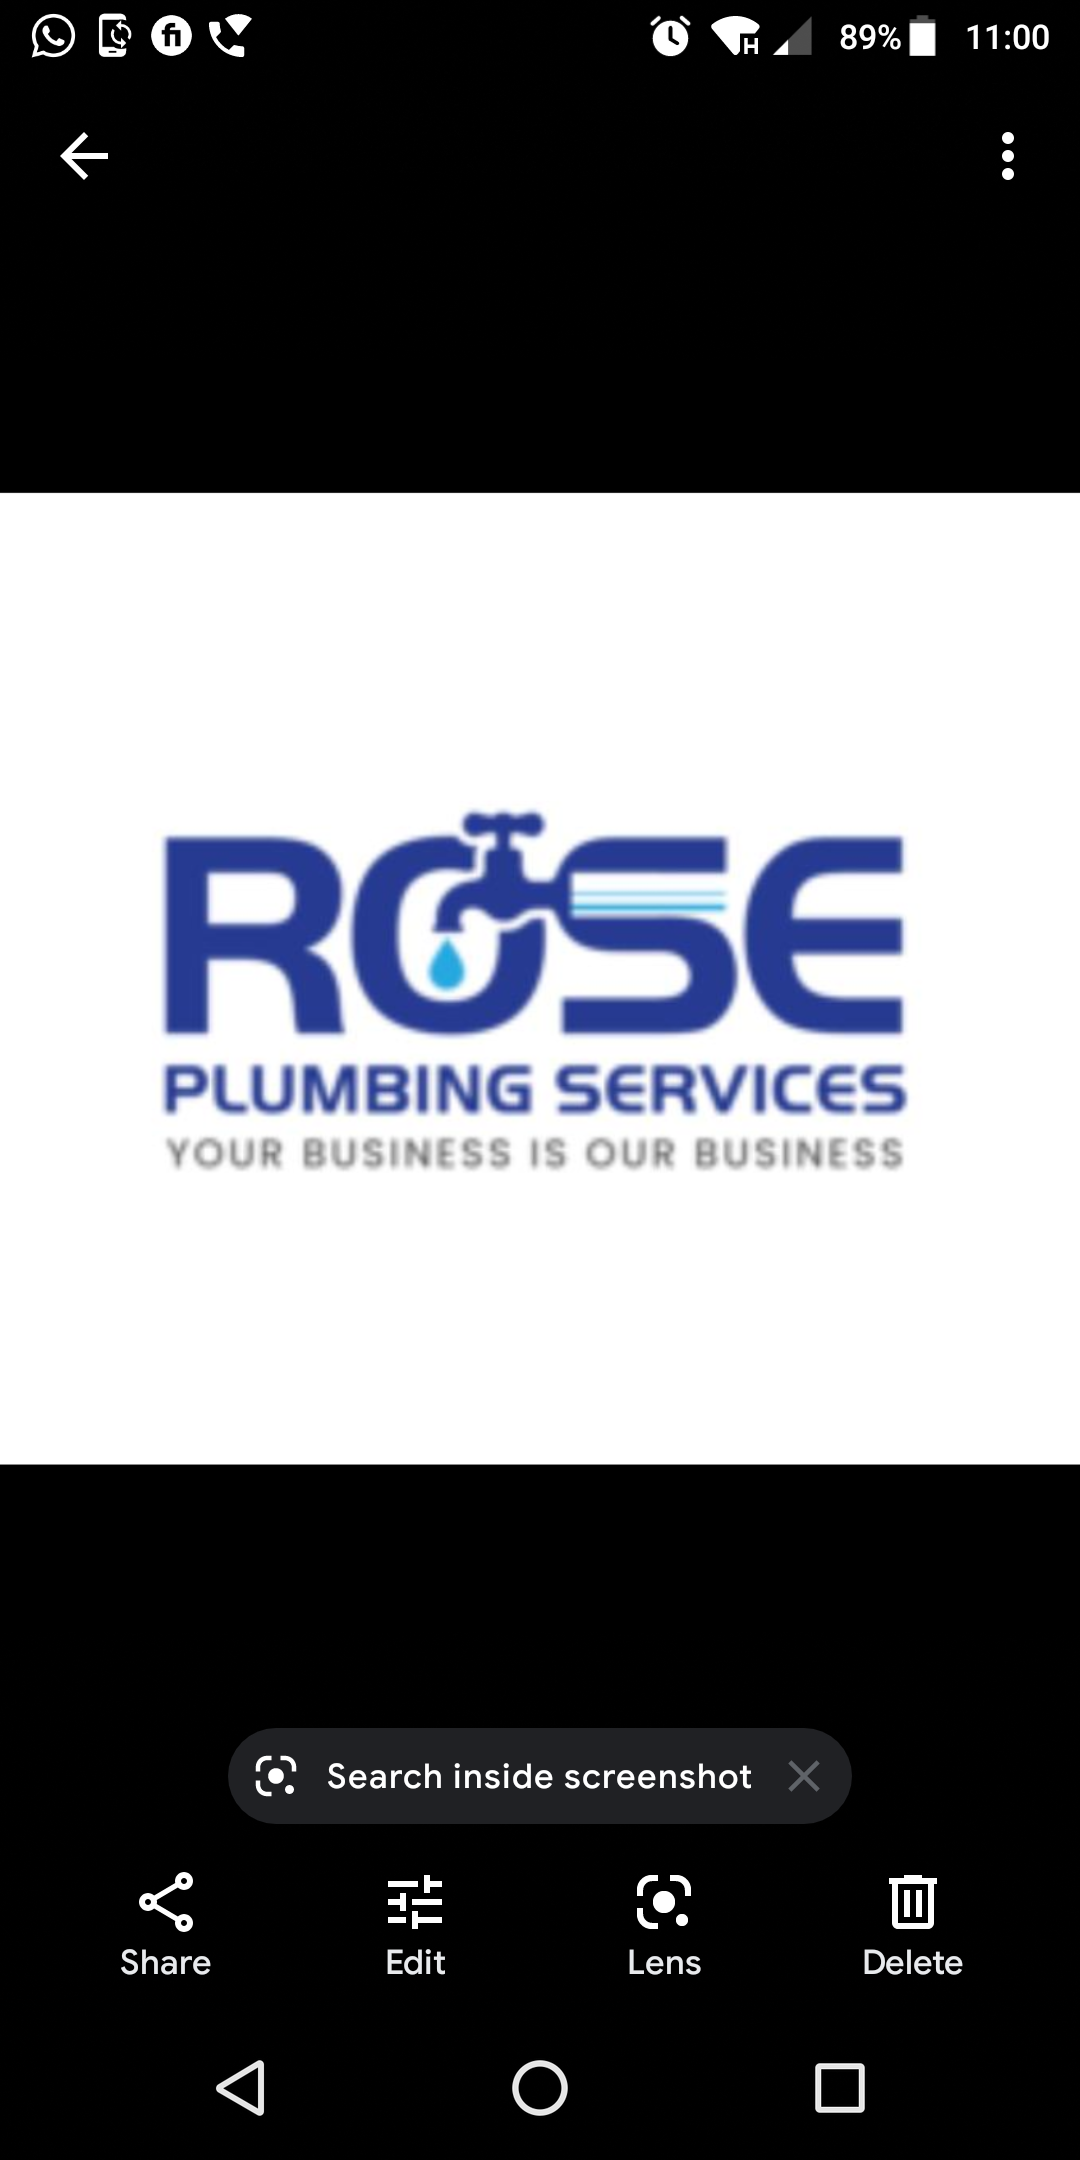 Rose Plumbing Services, Inc. Logo